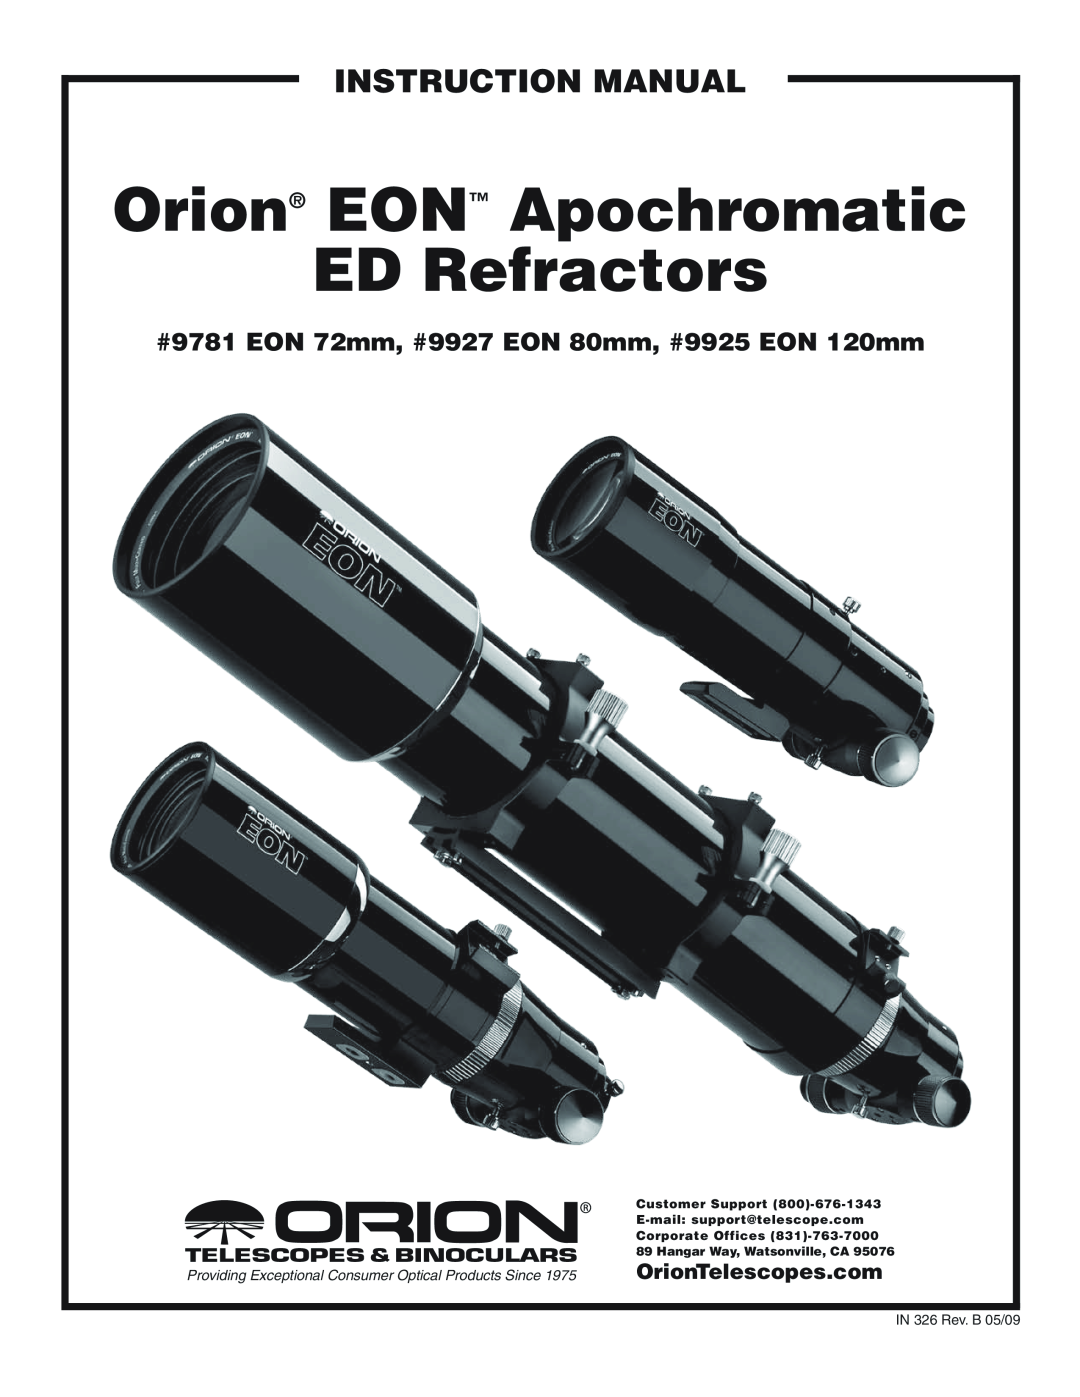 Orion instruction manual Orion EON Apochromatic ED Refractors, #9781 EON 72mm, #9927 EON 80mm, #9925 EON 120mm 